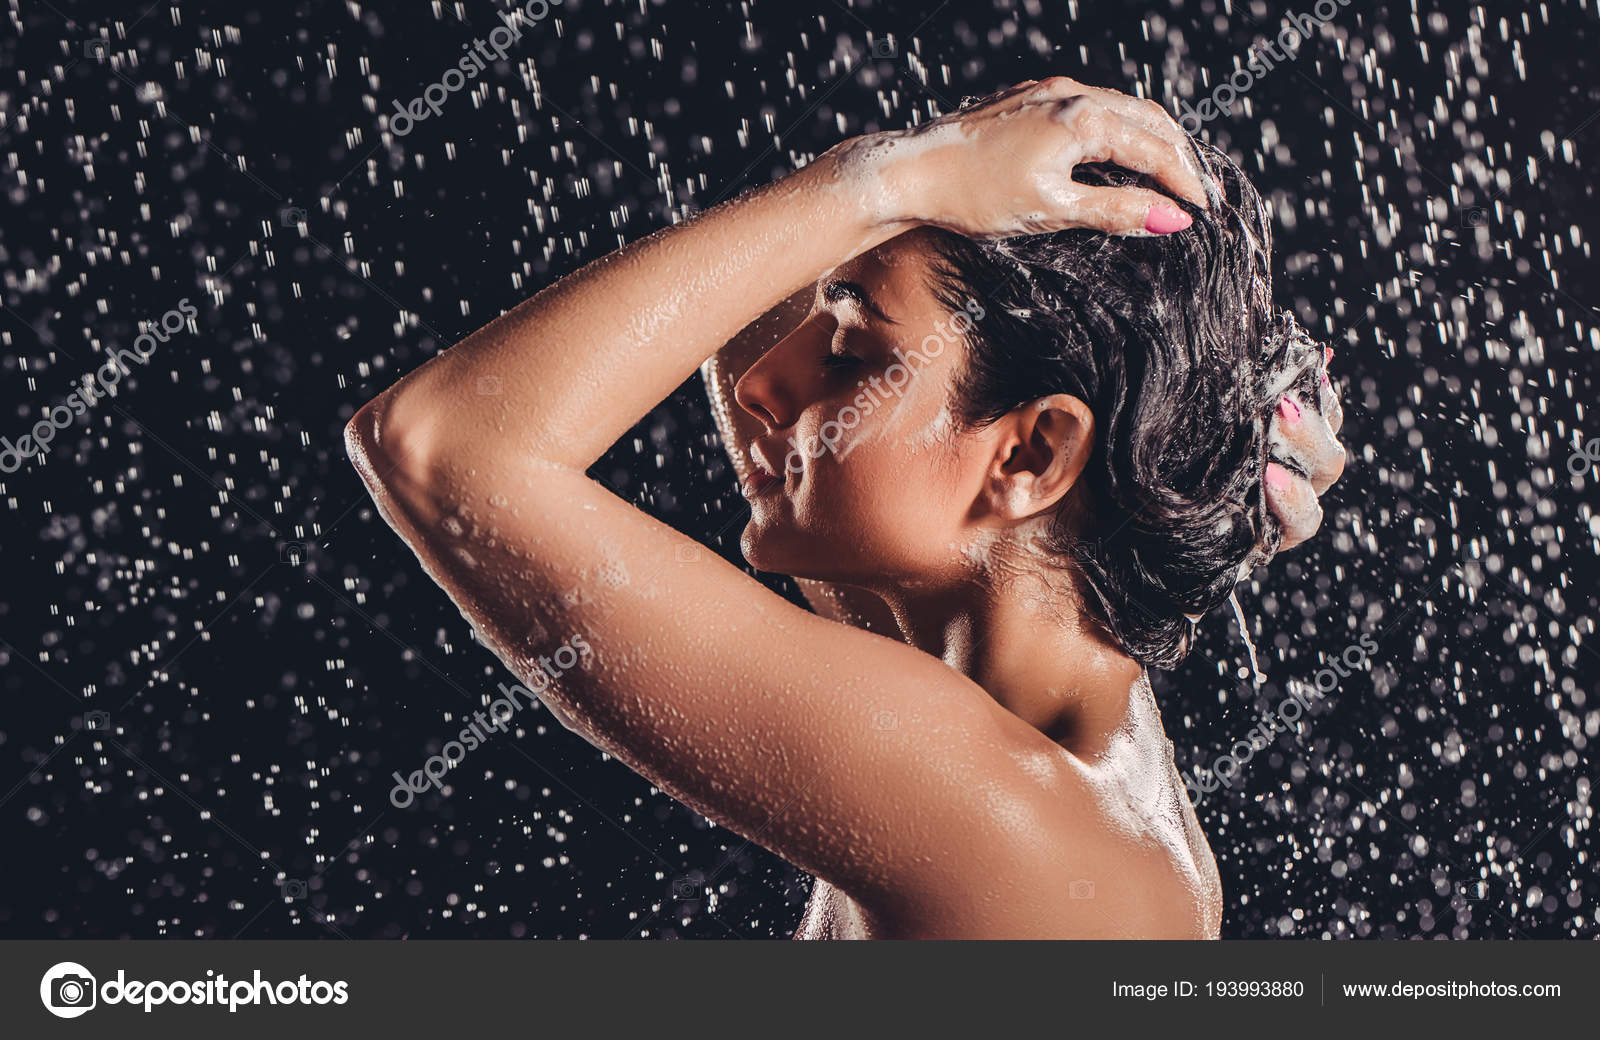 Shower brunette. Моет голову шампунем. Мыть голову под холодной водой. Девушка в душе моет голову в душевой.